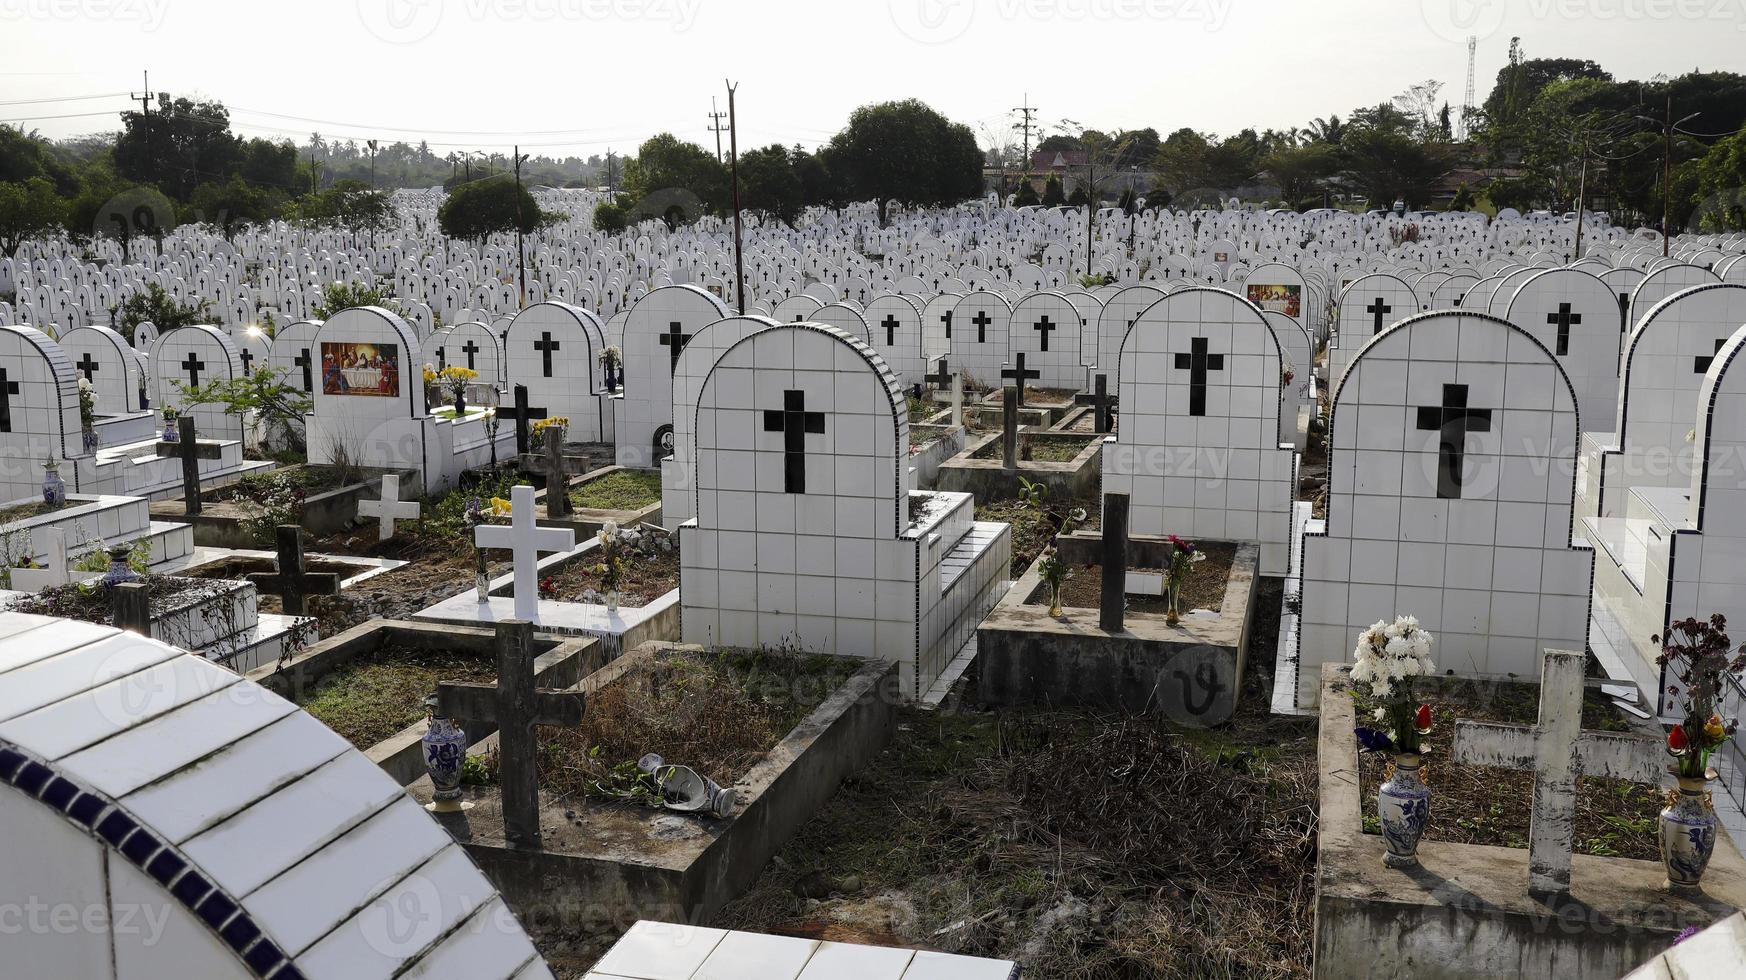 de offentlig kyrkogård innehåller identisk vit keramisk gravar med blommor. foto